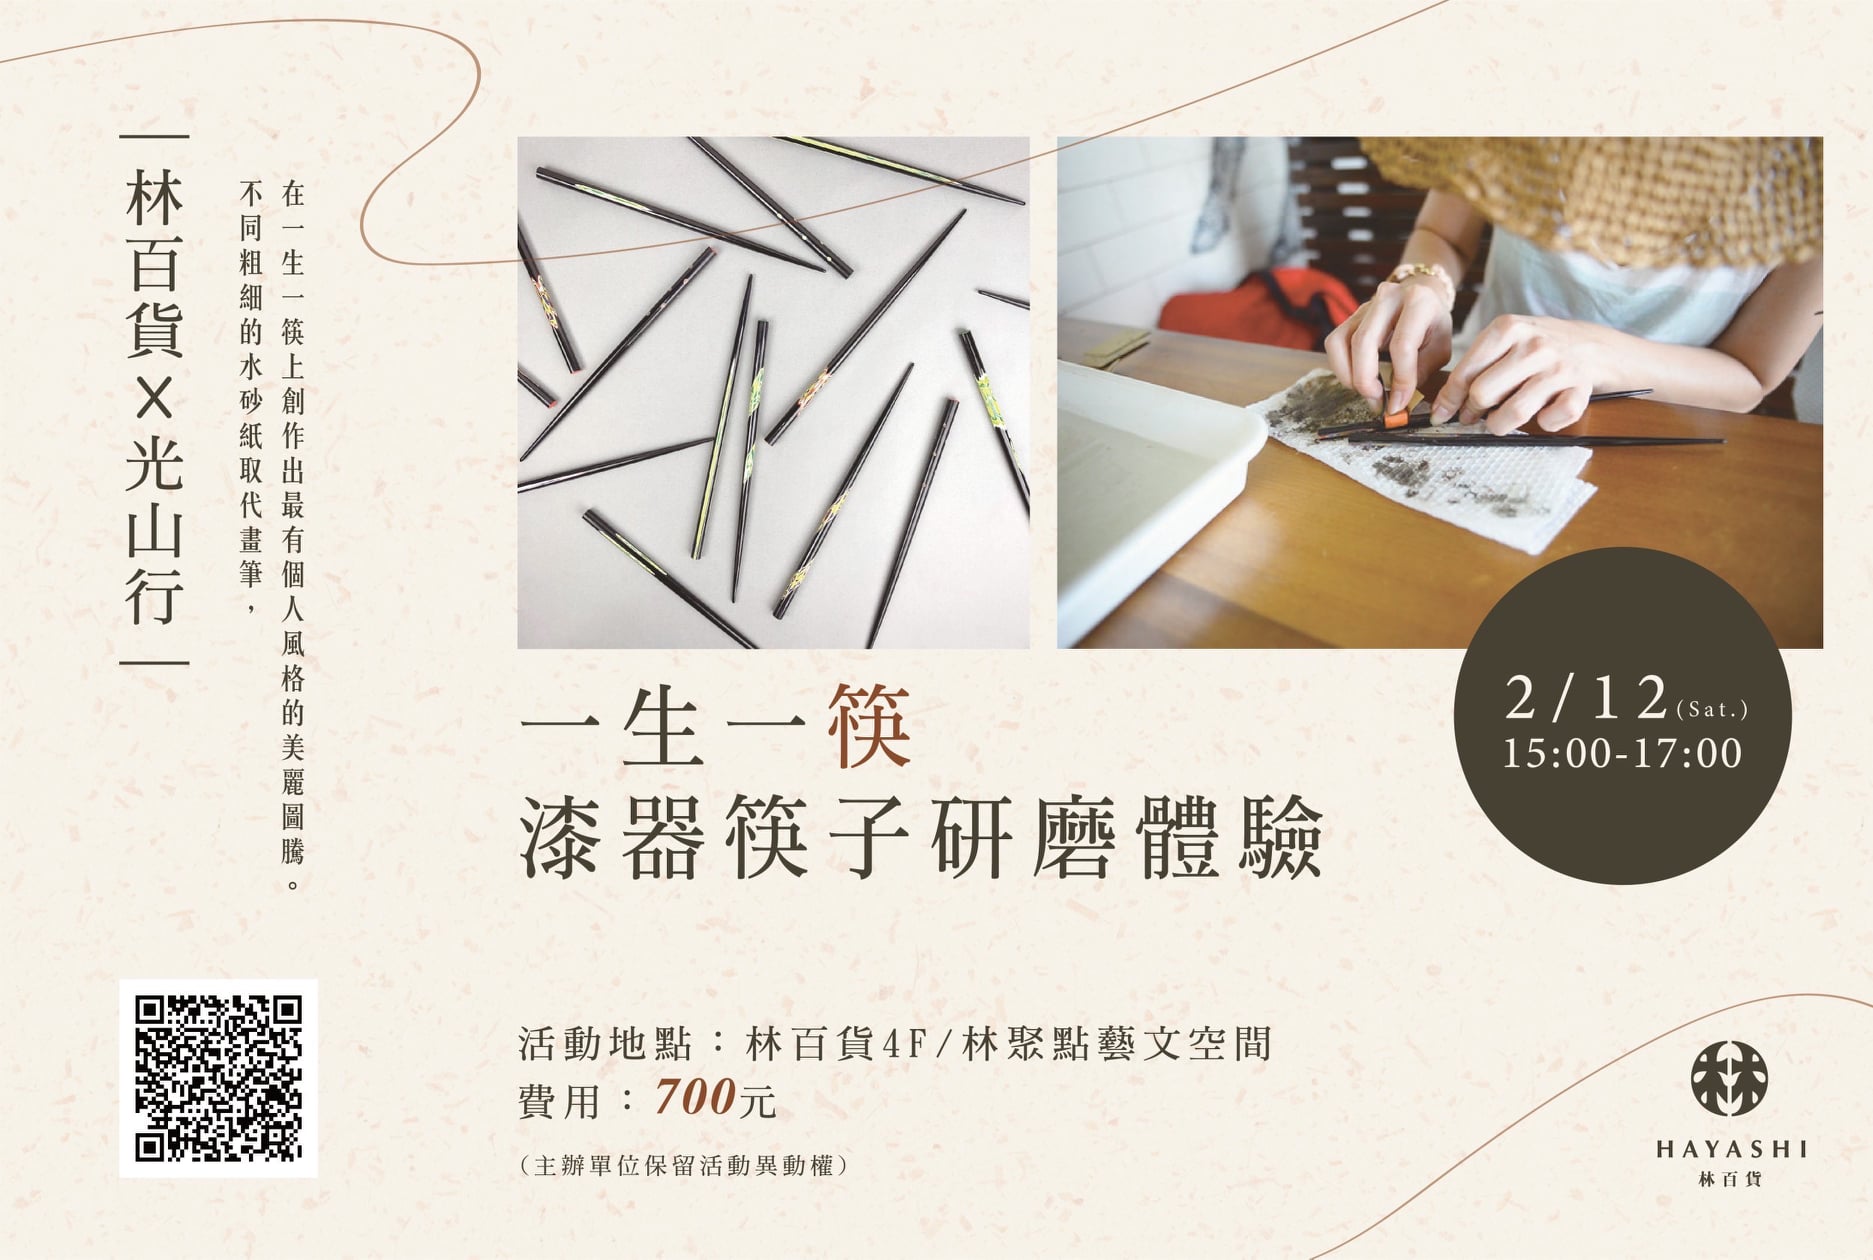 林百貨～一生一筷 漆器筷子研磨體驗